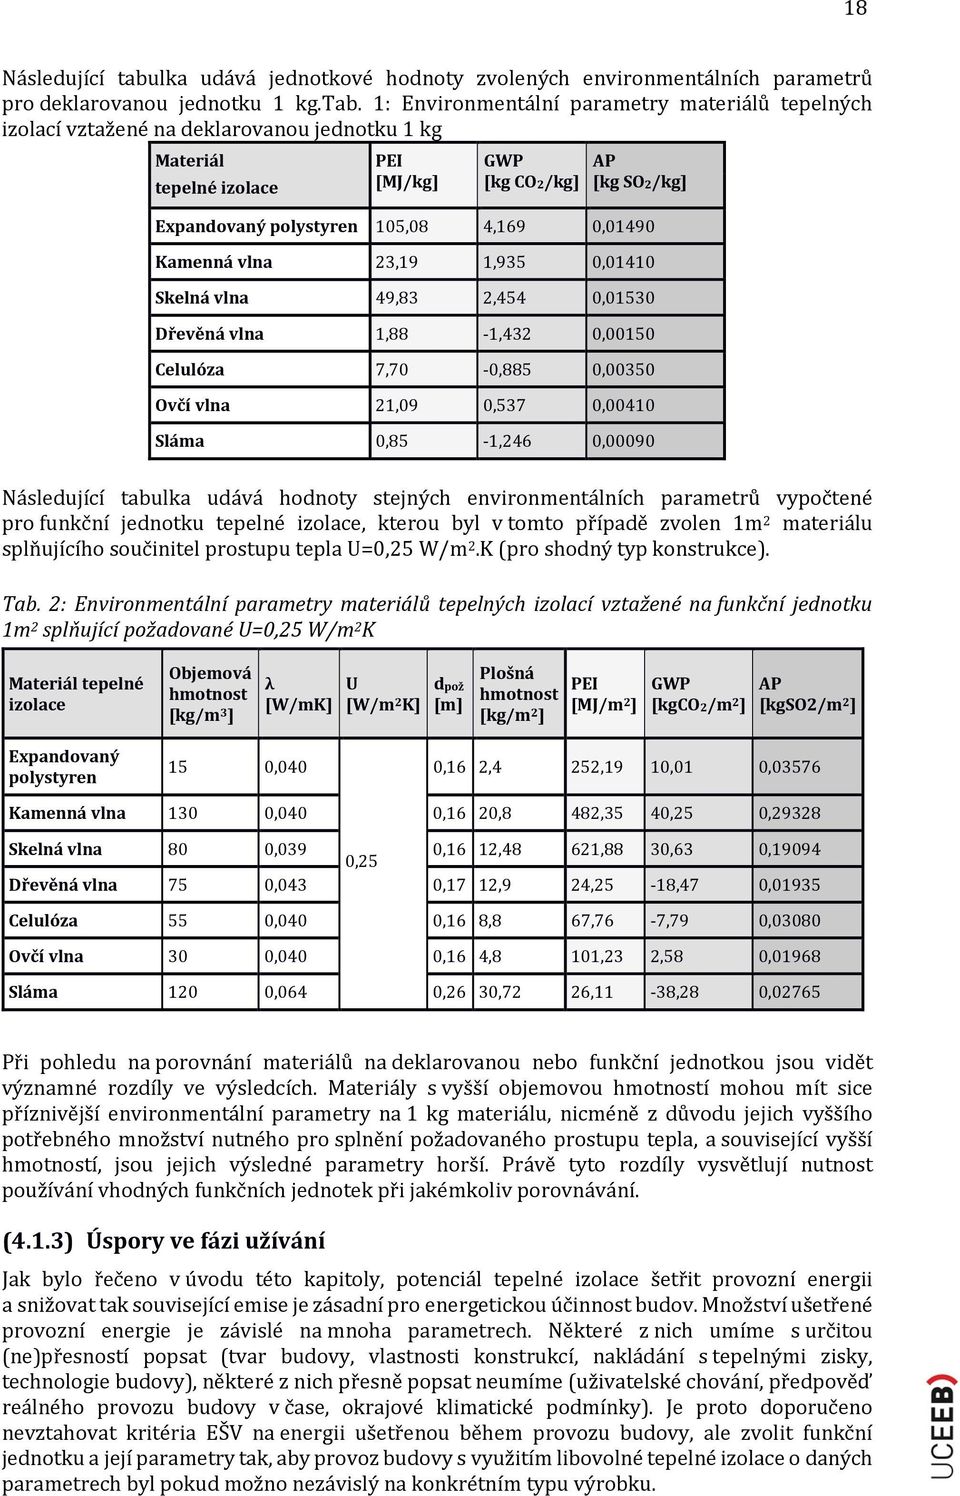 1: Environmentální parametry materiálů tepelných izolací vztažené na deklarovanou jednotku 1 kg Materiál tepelné izolace PEI [MJ/kg] GWP [kg CO2/kg] AP [kg SO2/kg] Expandovaný polystyren 105,08 4,169